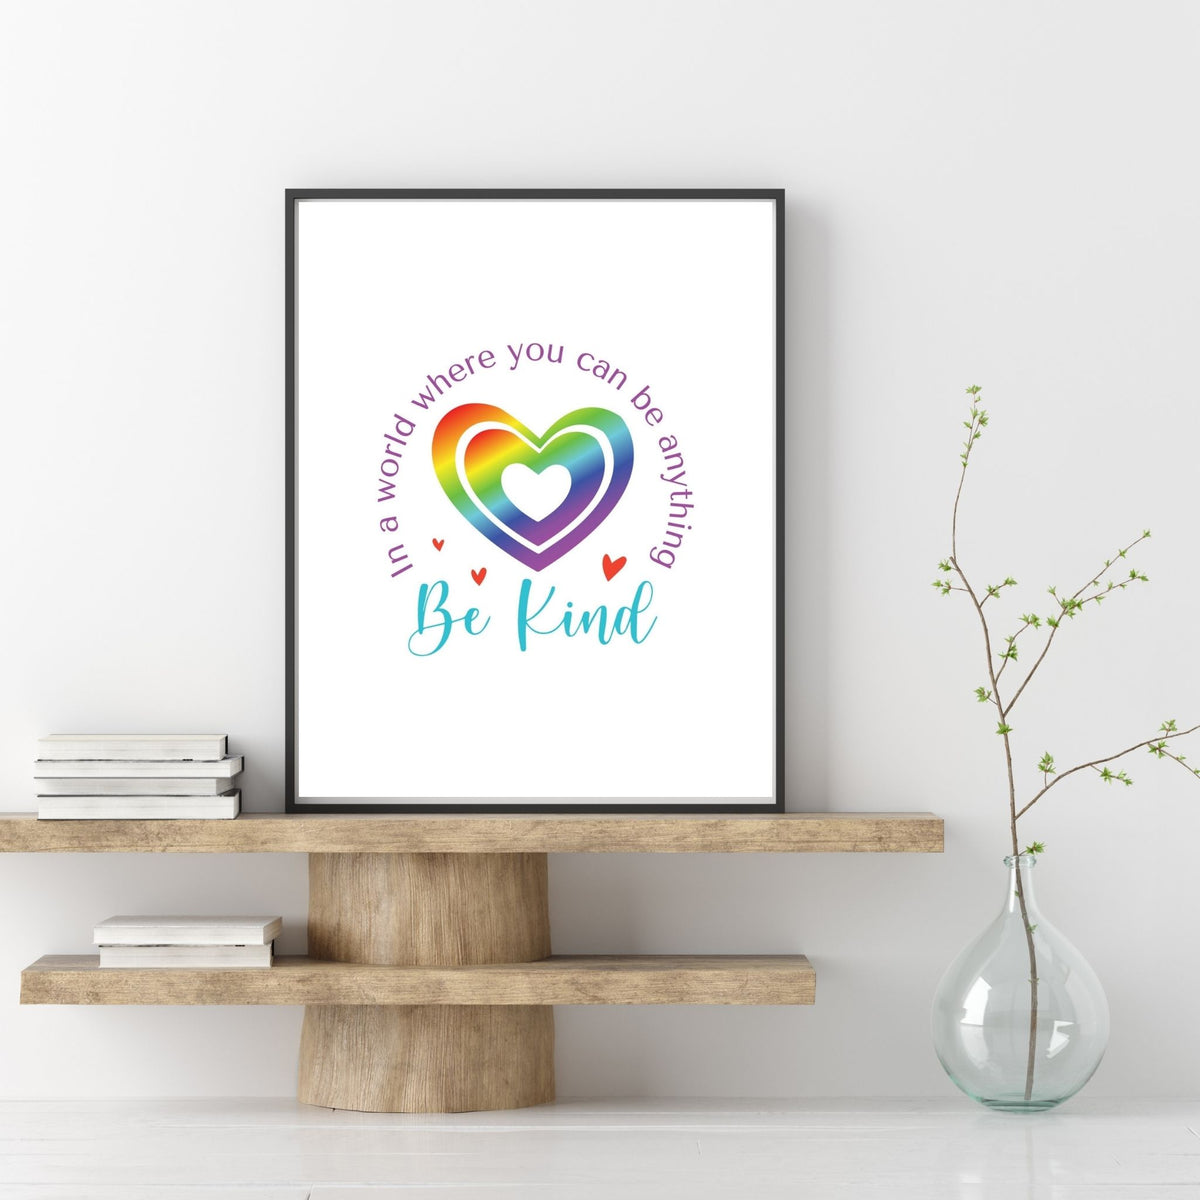 Be Kind (Printable Art)